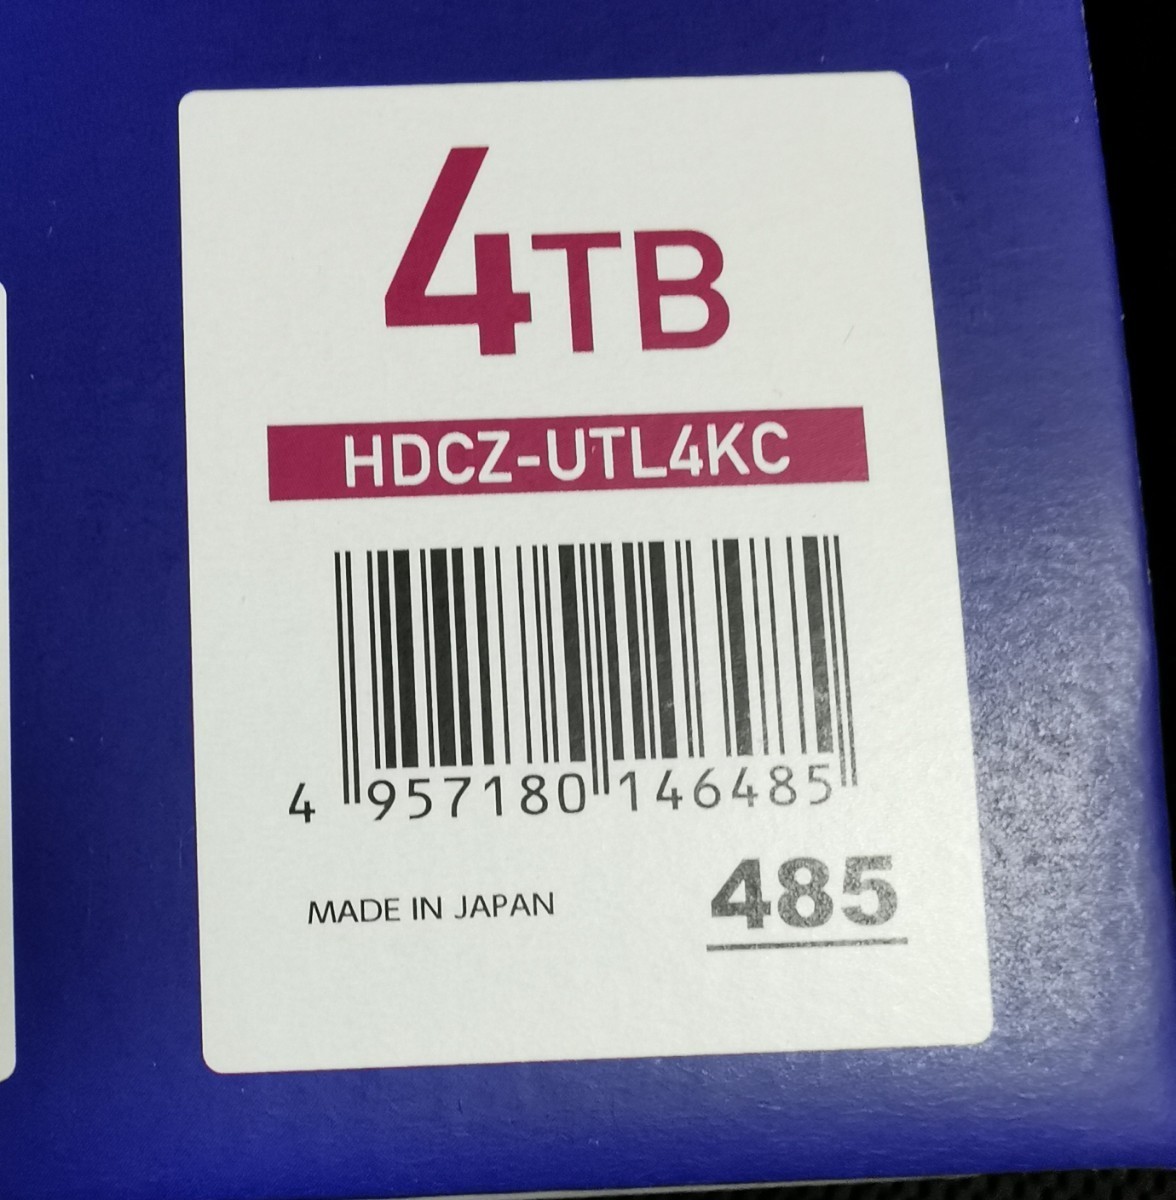 新品未開封品 4TB  外付HDD 外付けハードディスク IODATA